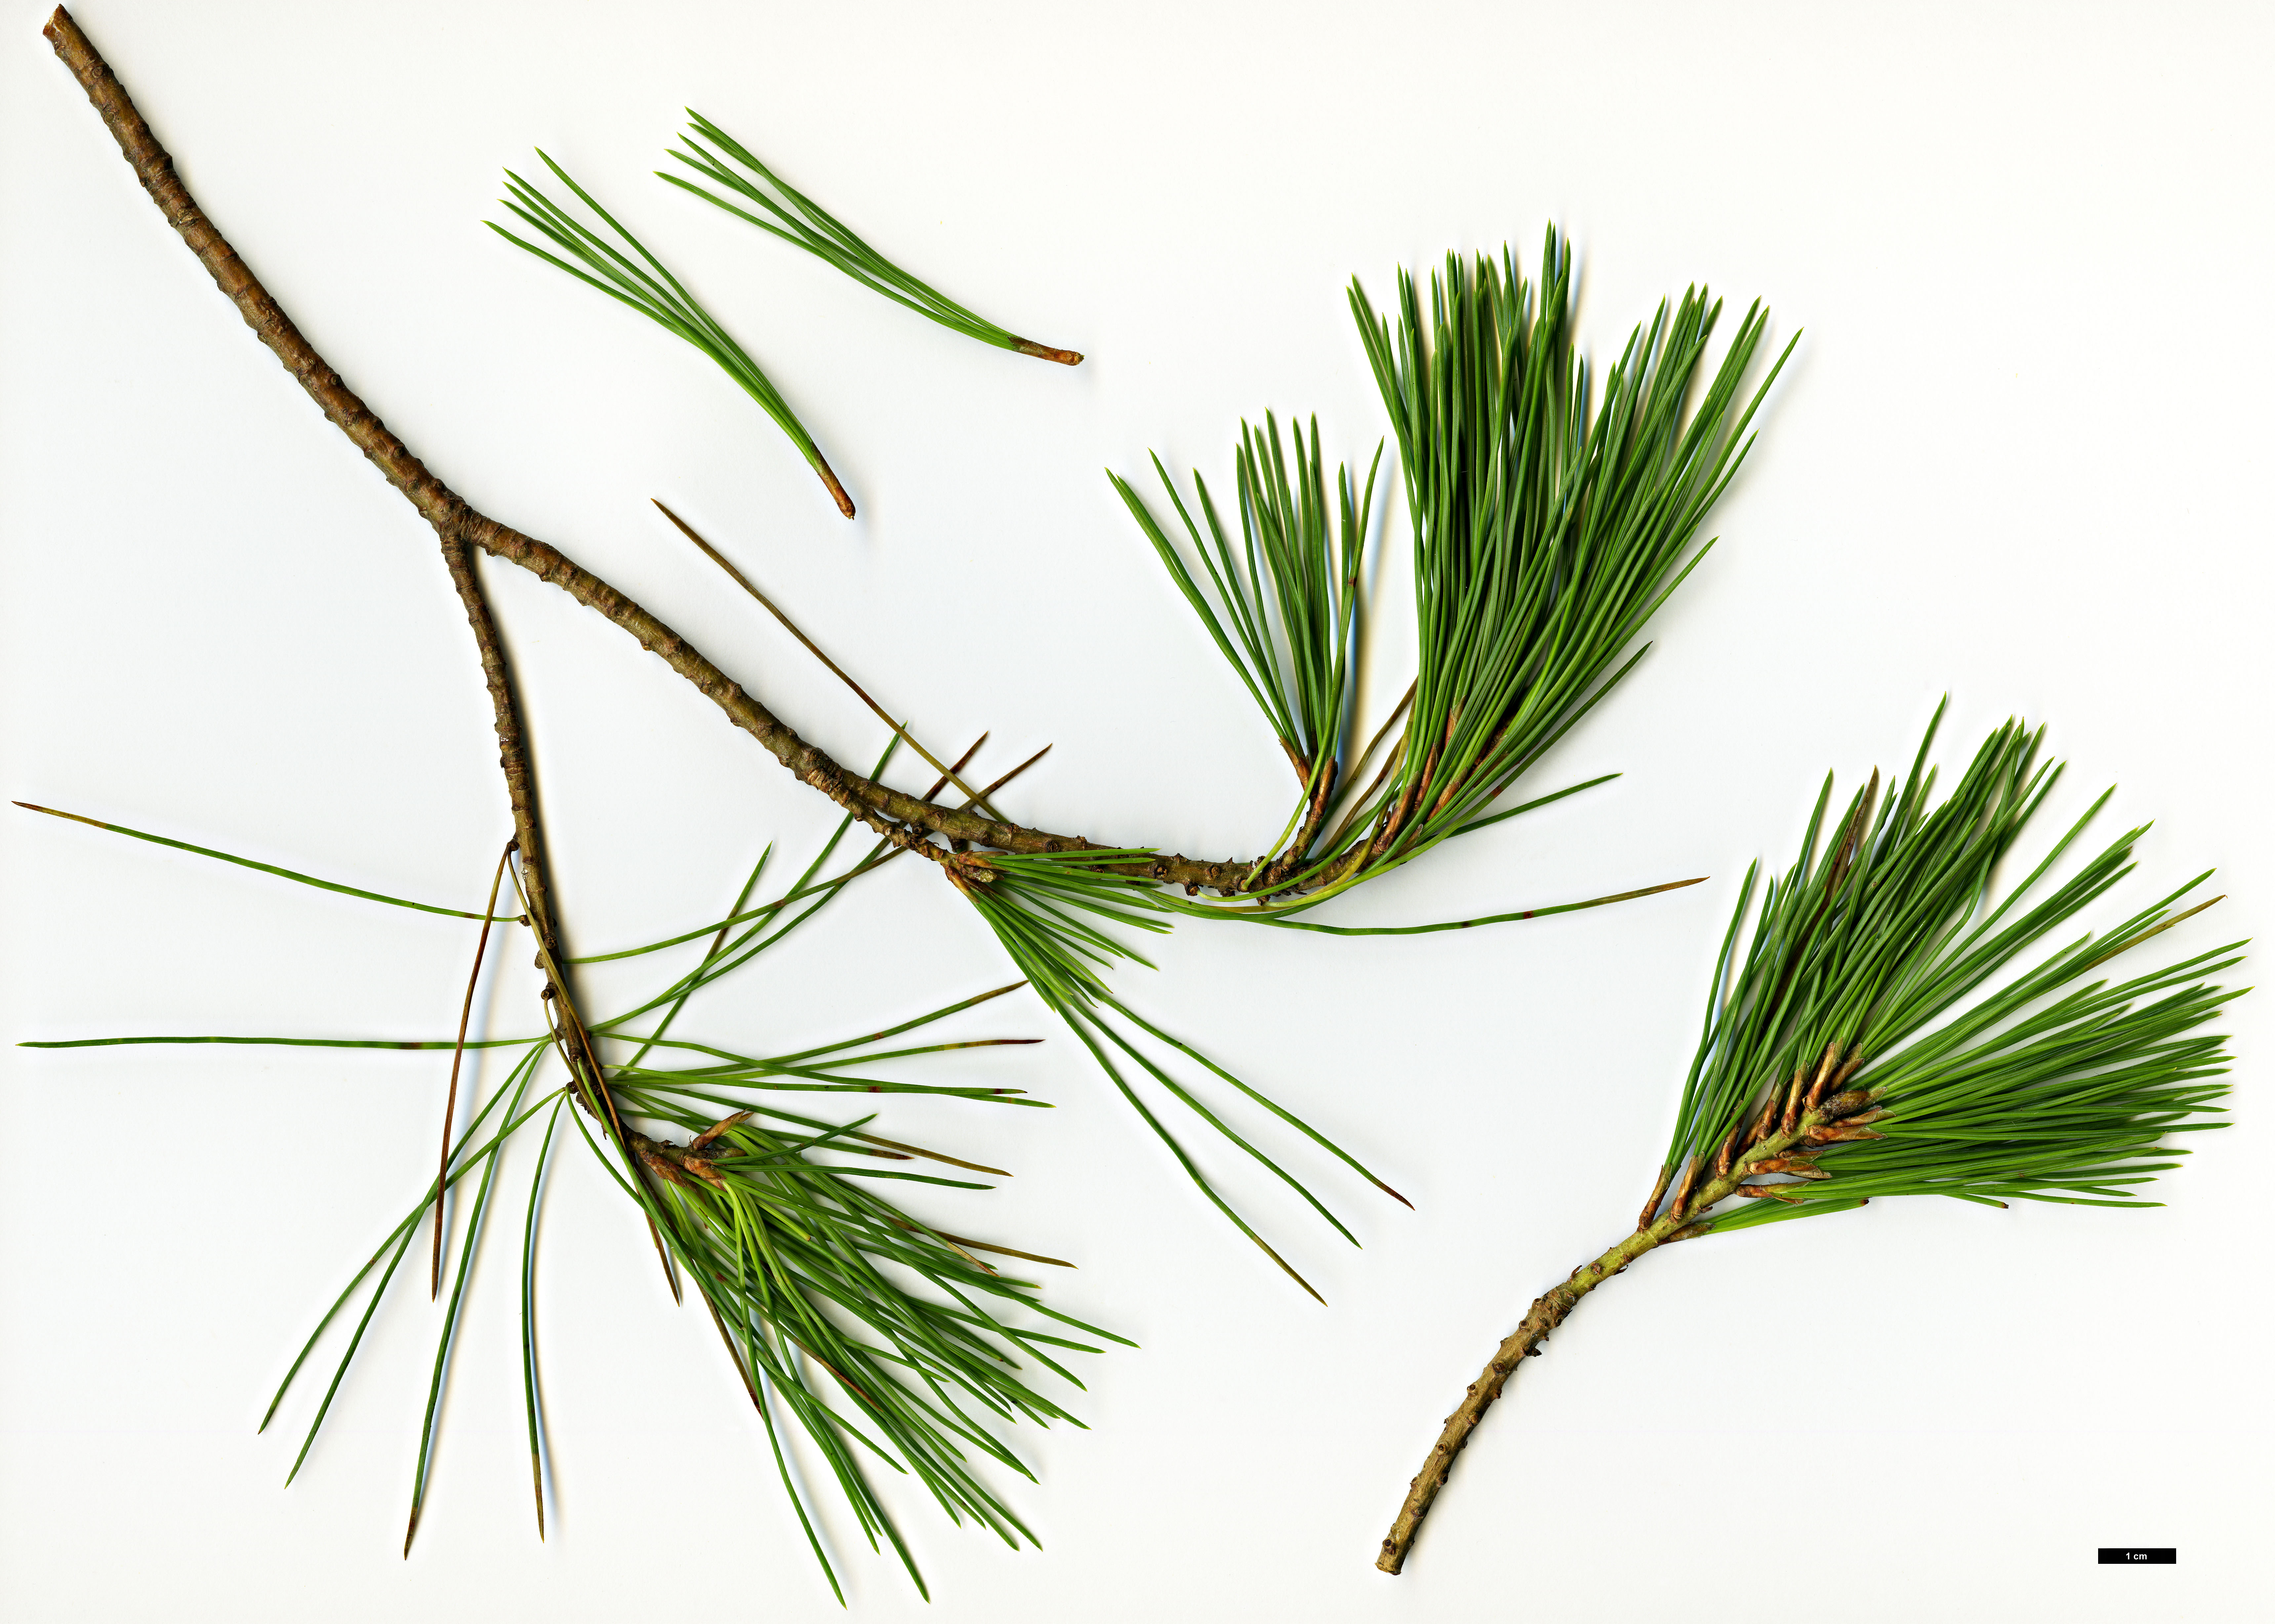 High resolution image: Family: Pinaceae - Genus: Pinus - Taxon: lambertiana